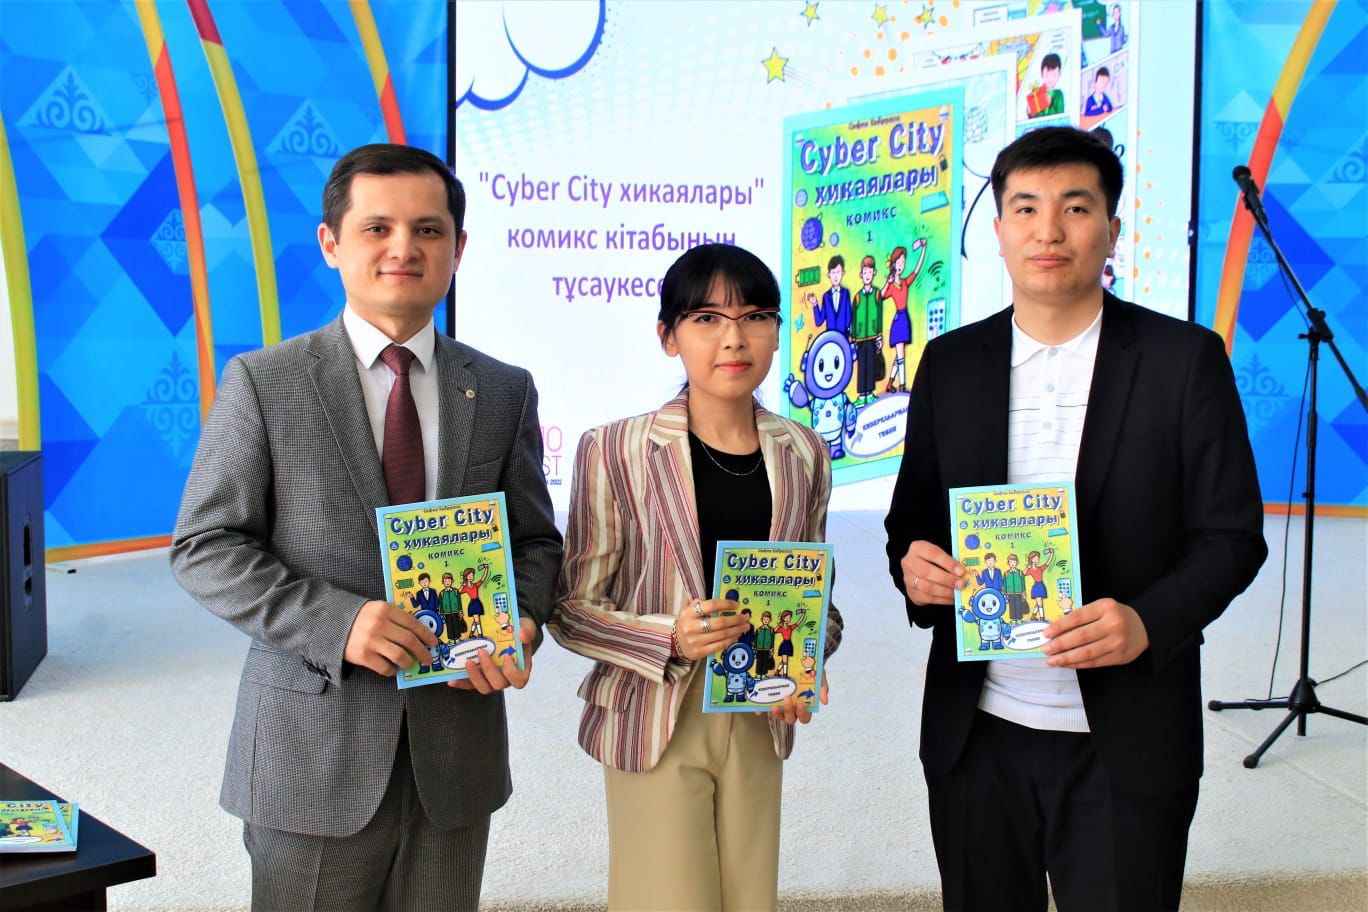 Кызылординский автор впервые выпустила книгу в формате комиксов